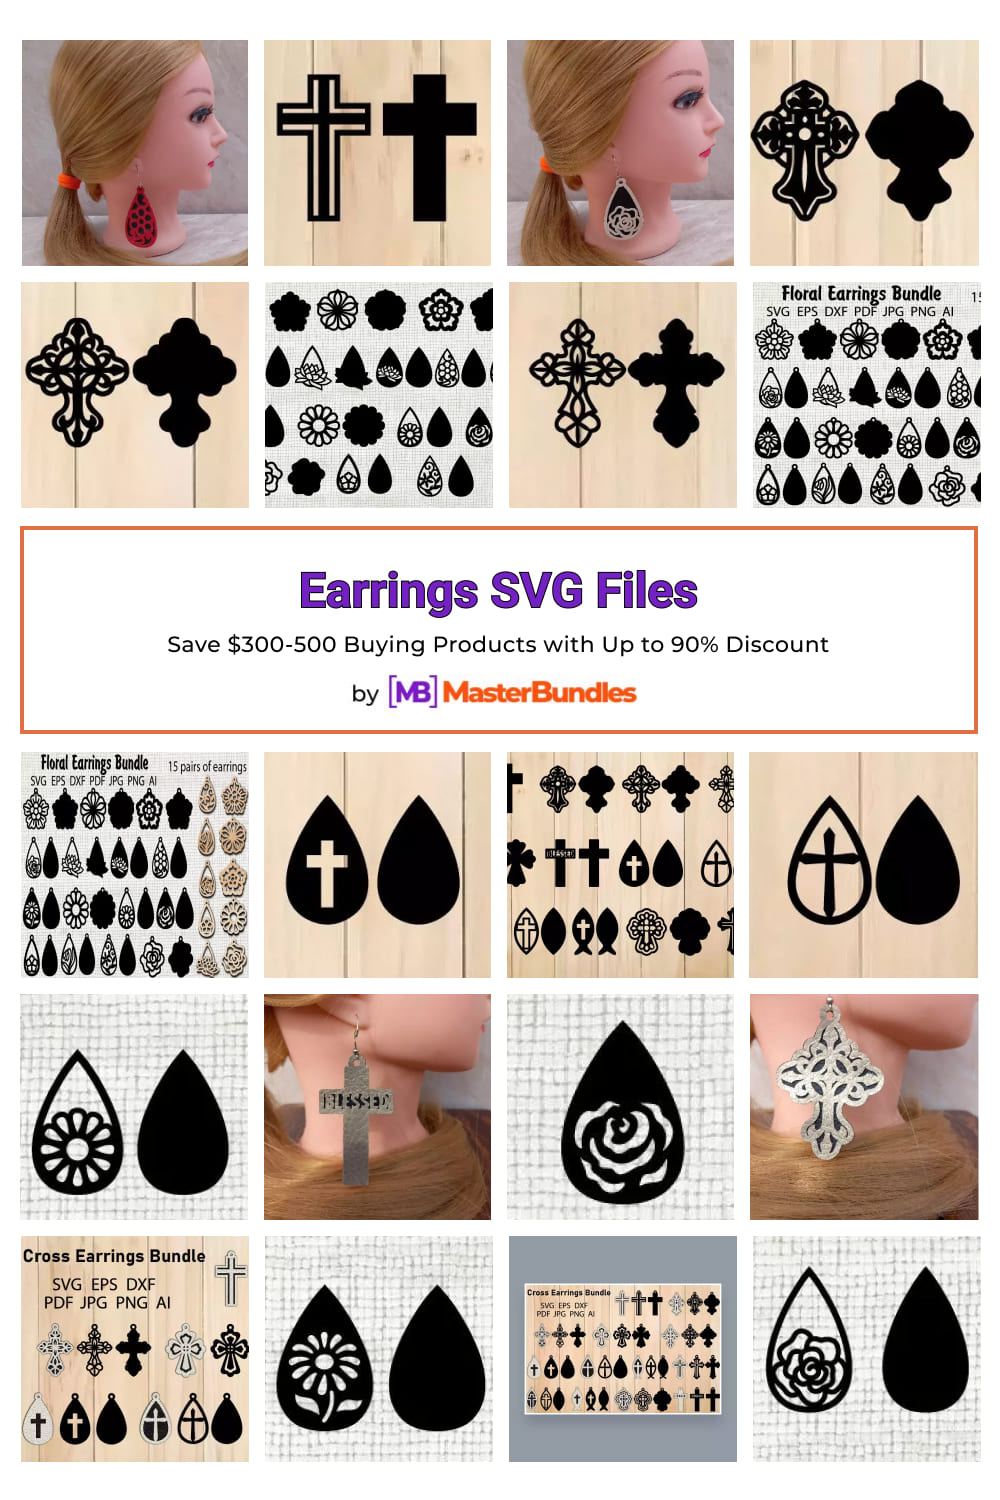 Earrings SVG Files for pinterest.